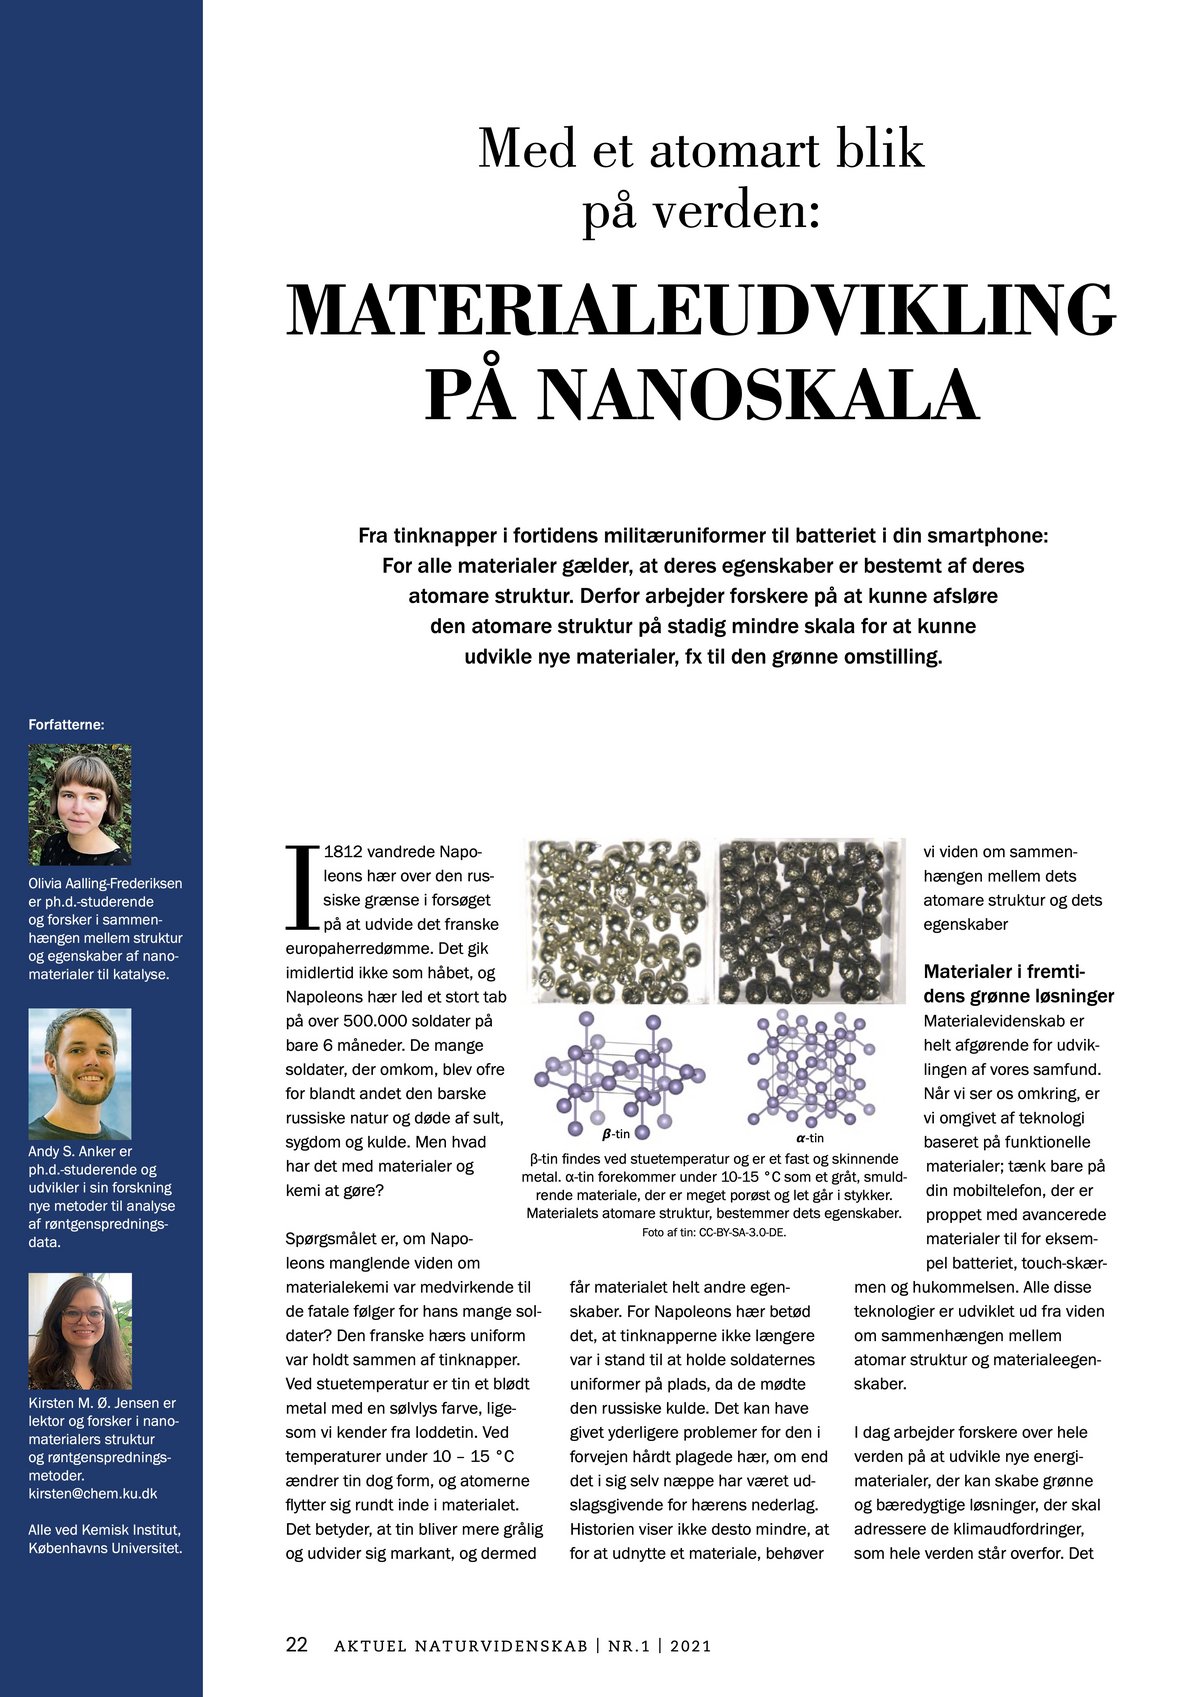 Med et atomart blik på verden: Materialeudvikling på nanoskala